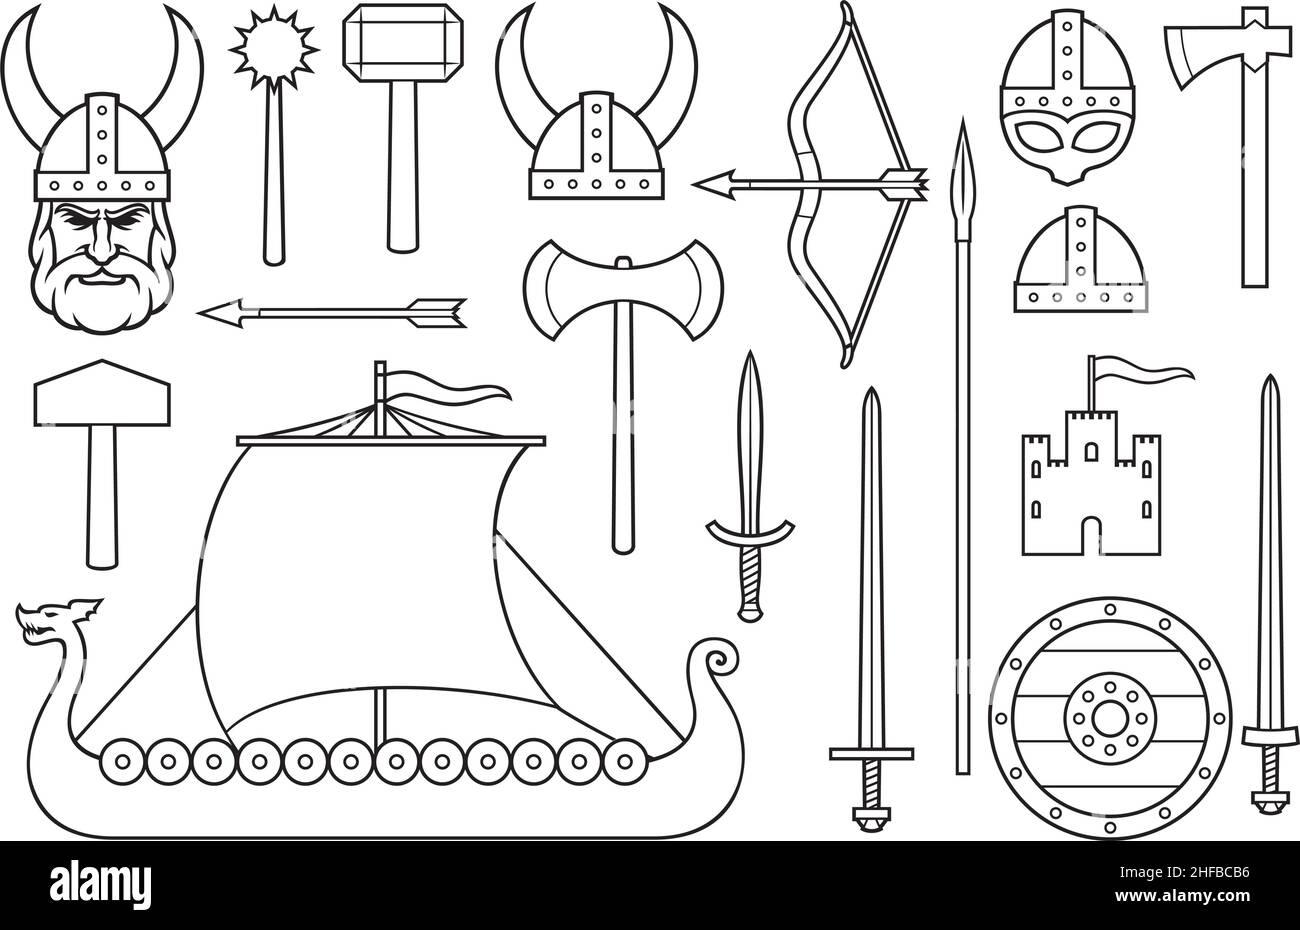 Collezione di icone vichinghe (spada, scudo di legno rotondo, nave lunga, casco cornato, macis, martello, freccia, arco, ascia, torre, vecchio castello) Illustrazione Vettoriale